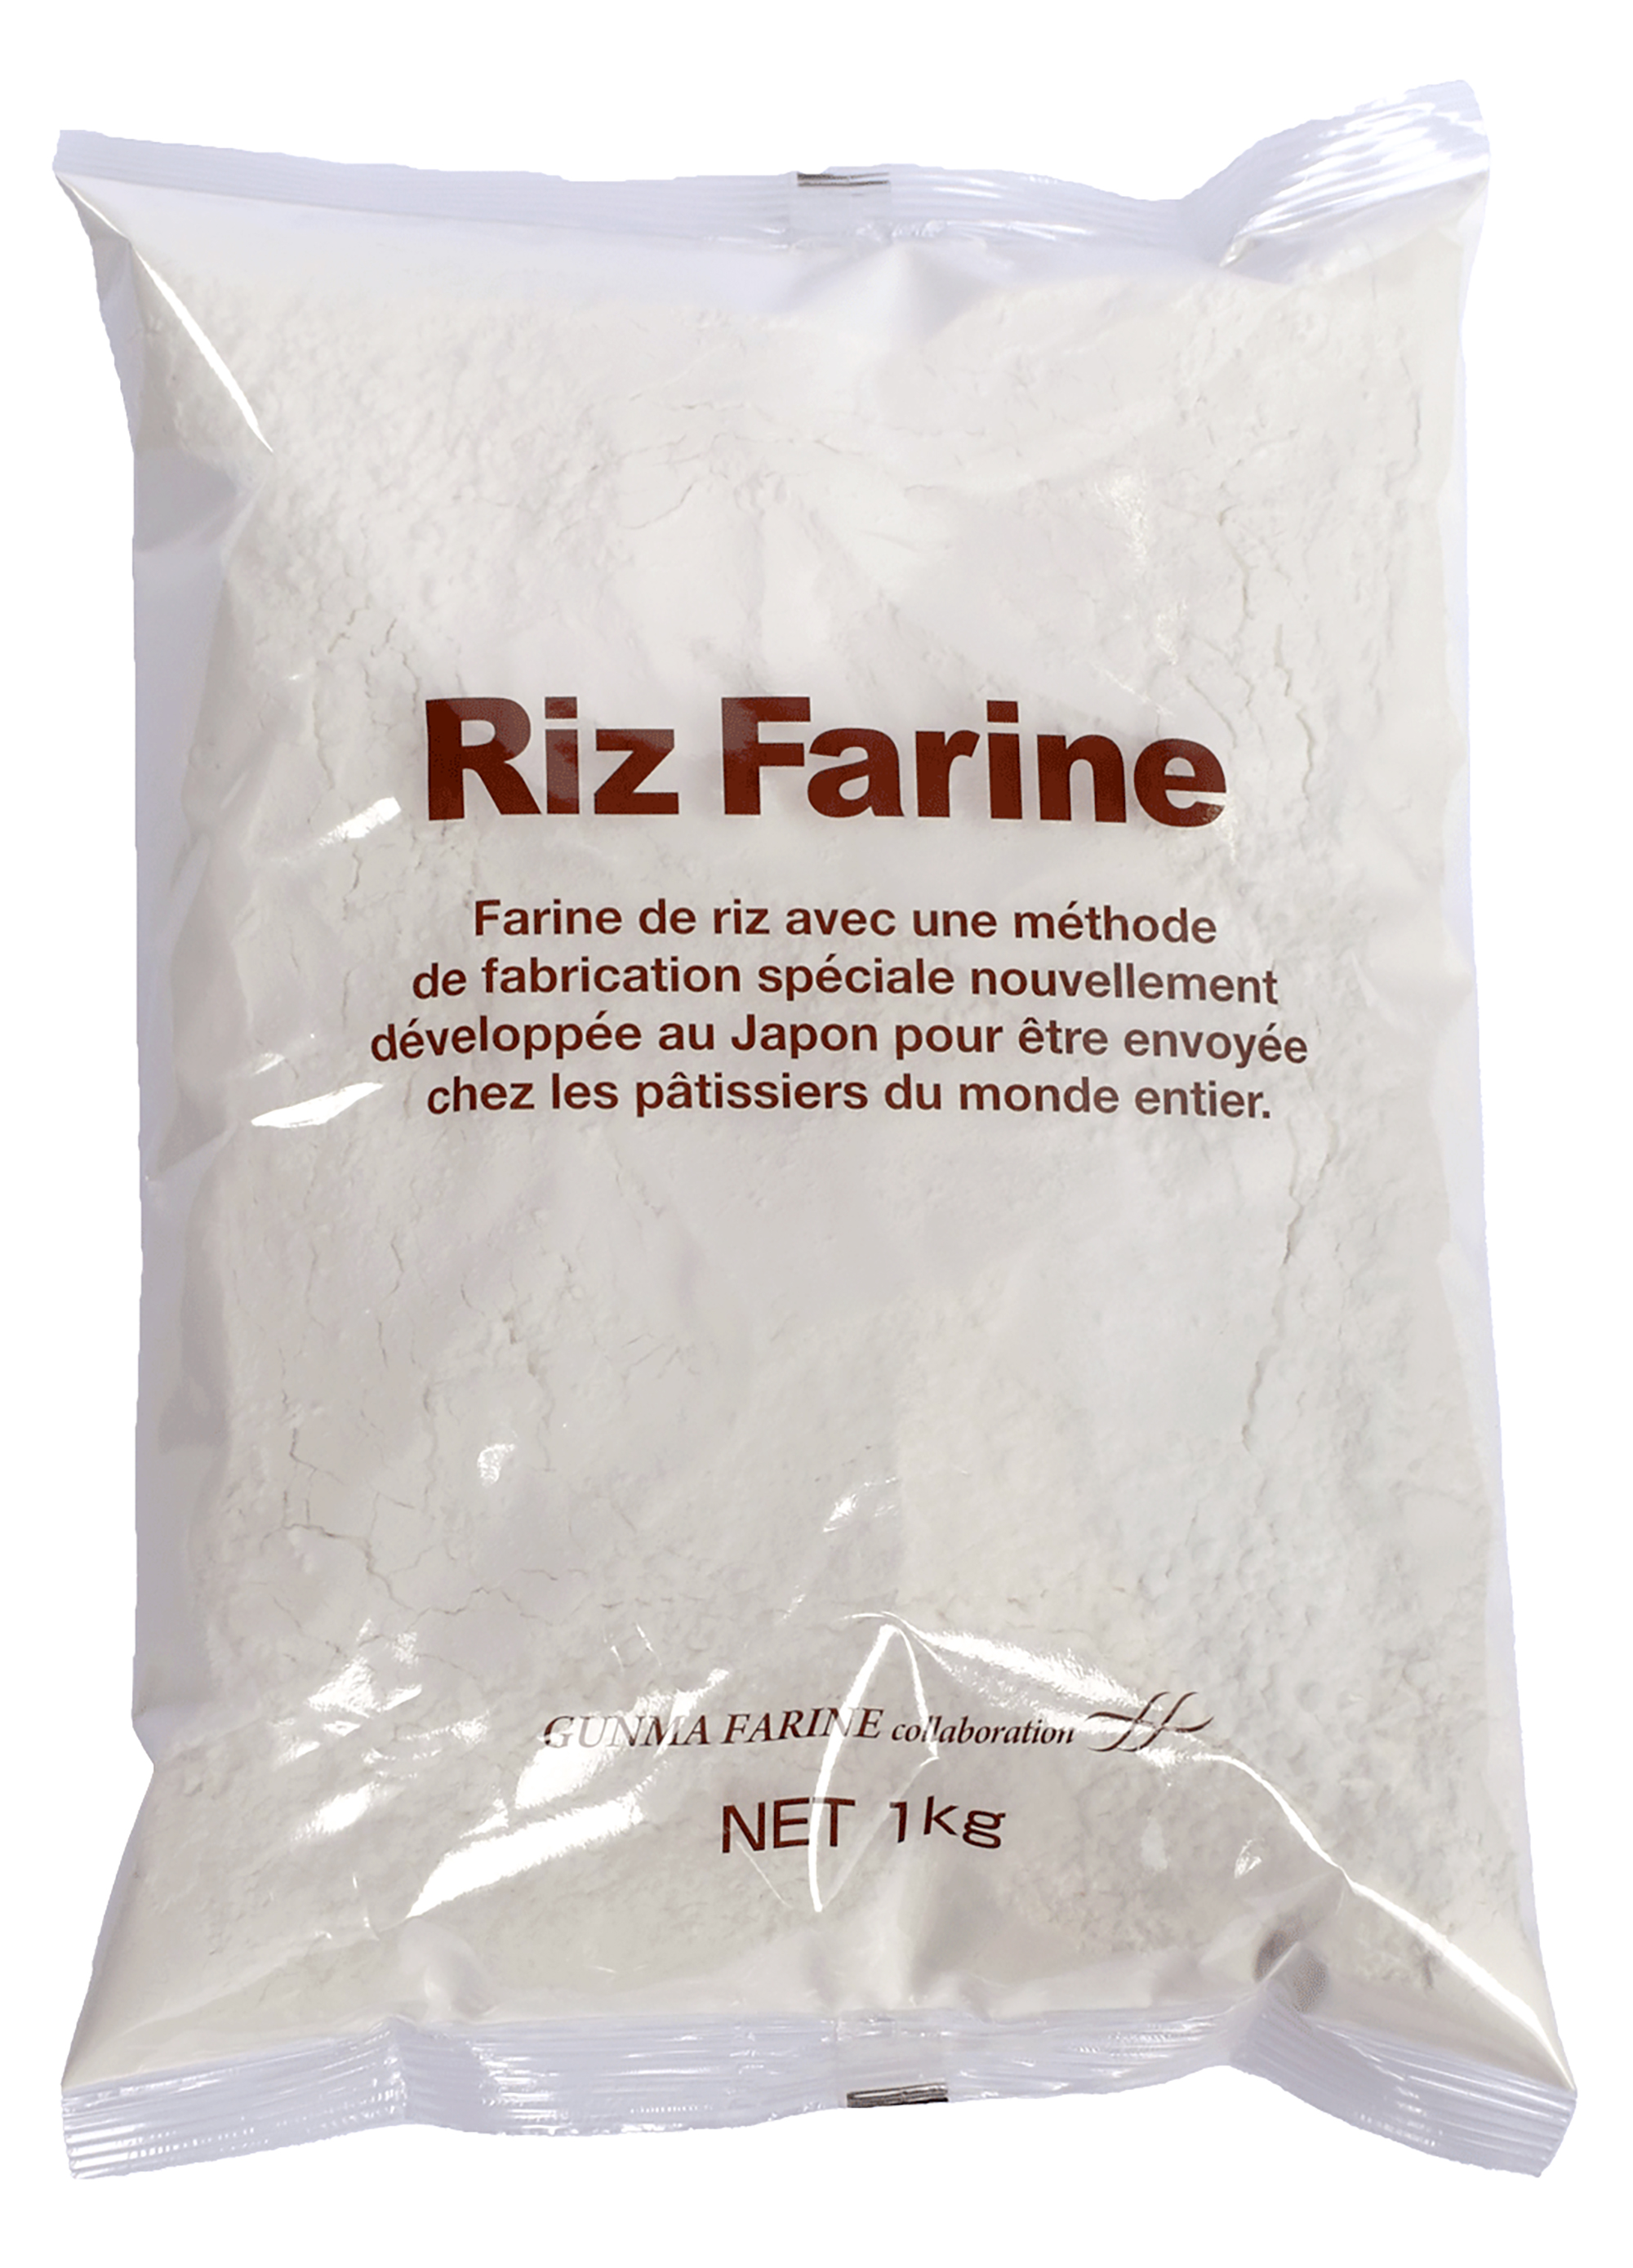 premium 製菓用米粉(Riz Farine)